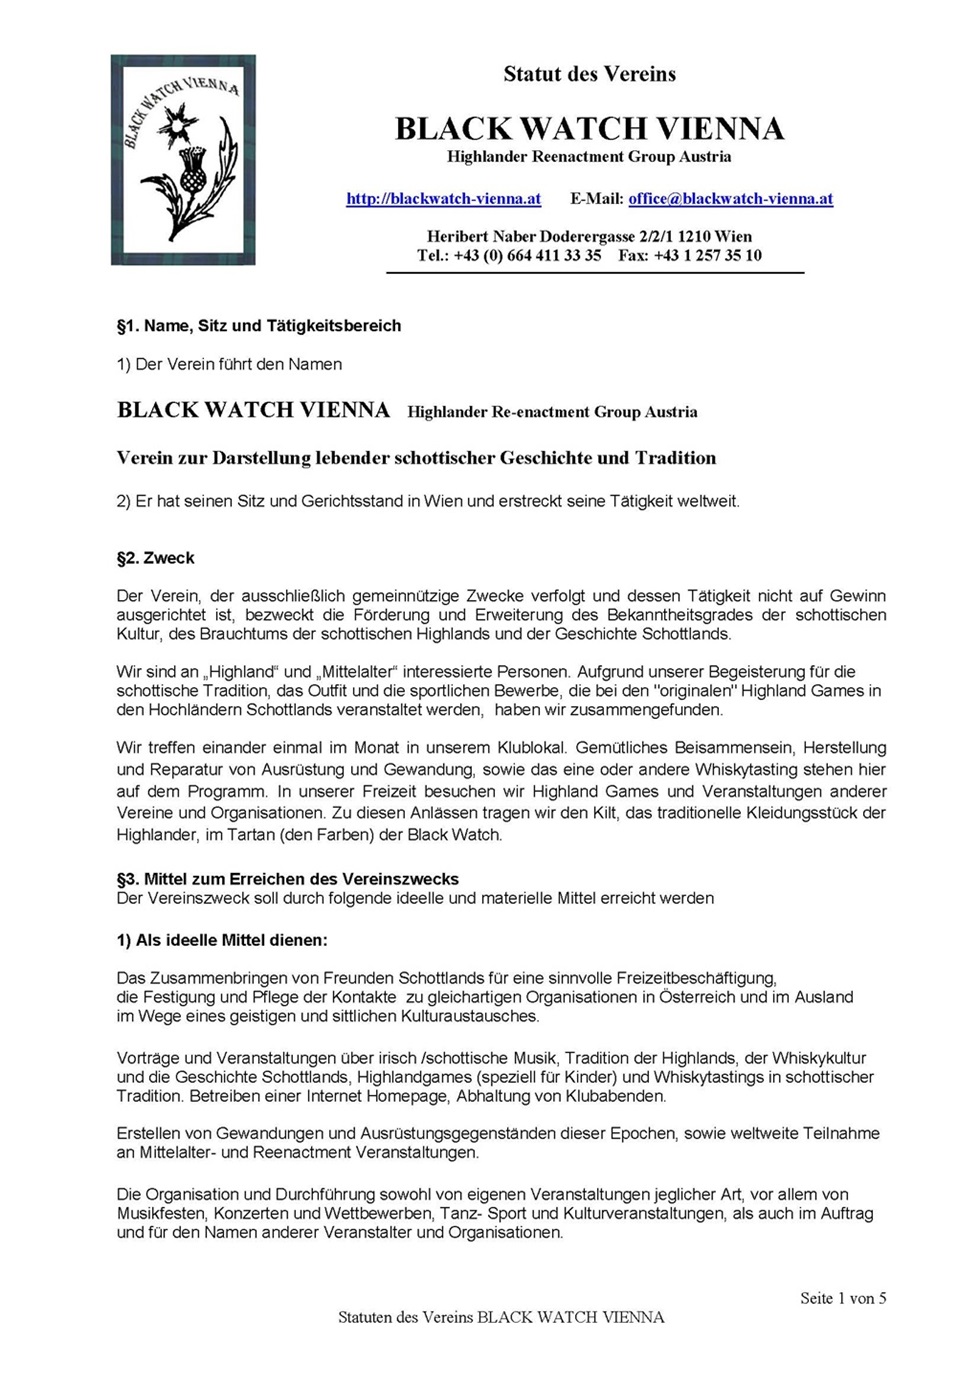 Statut des Vereins Black Watch Vienna, ZVR Zahl 629059154